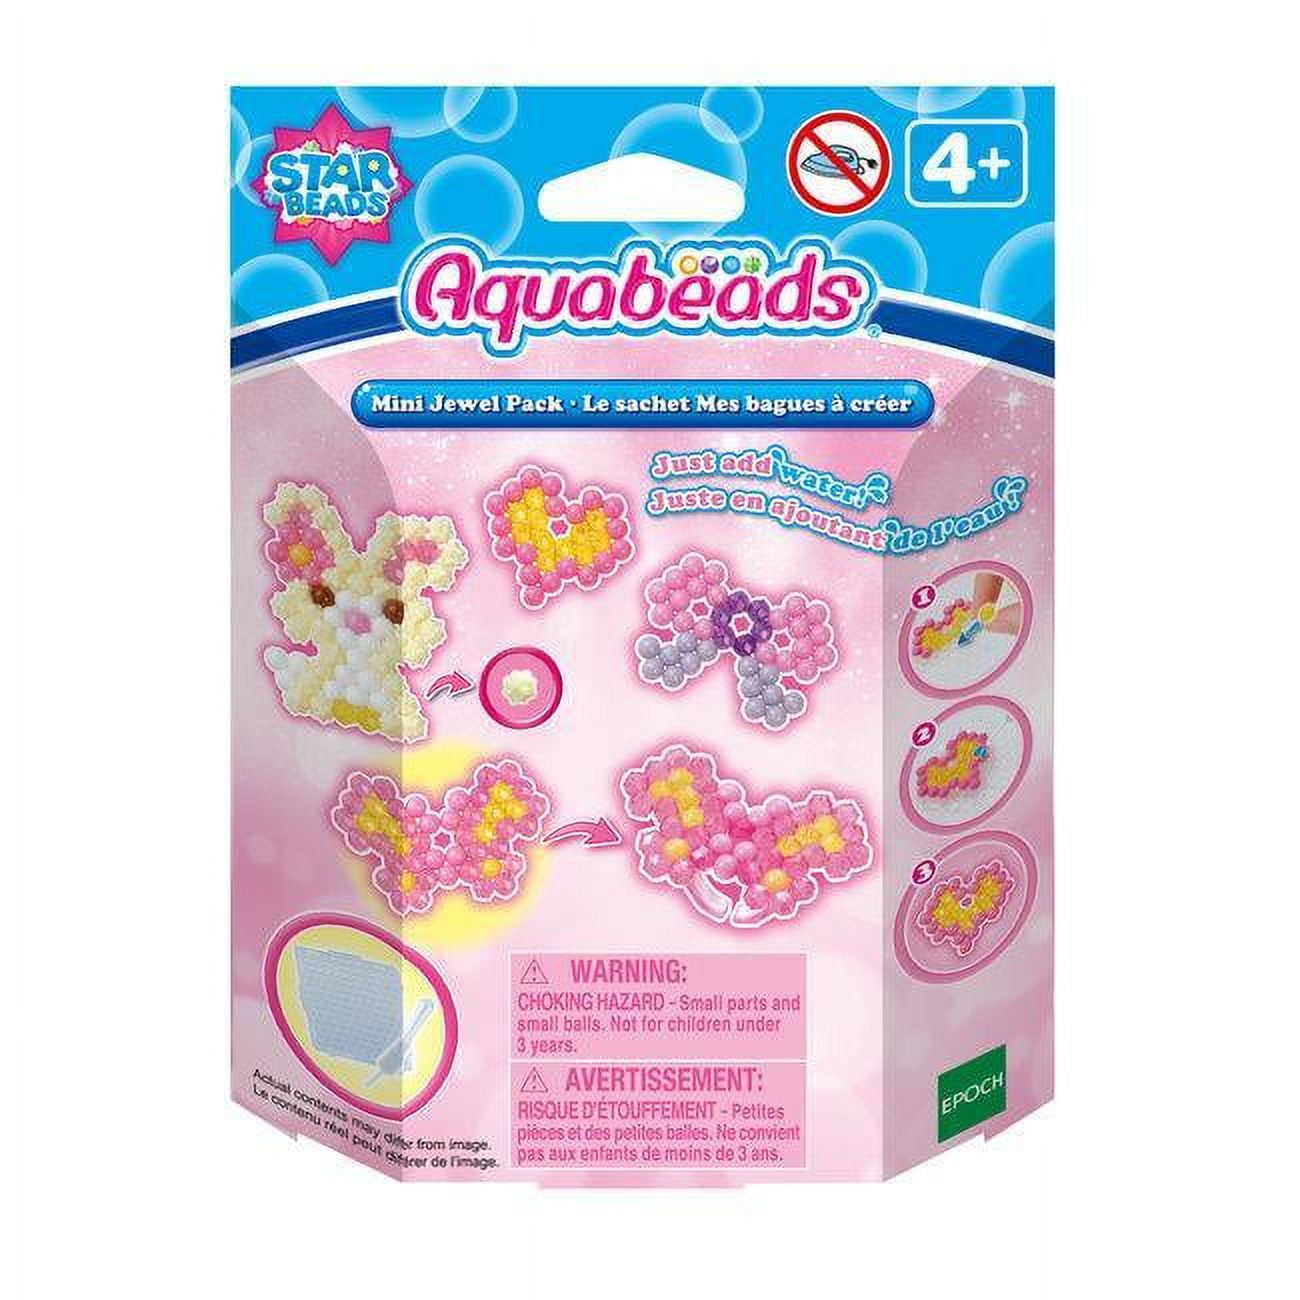 Star beads Aquabeads mini Mermaid Jewel Farm Pack Lot of 3 Epoch Kids  Crafts Kit